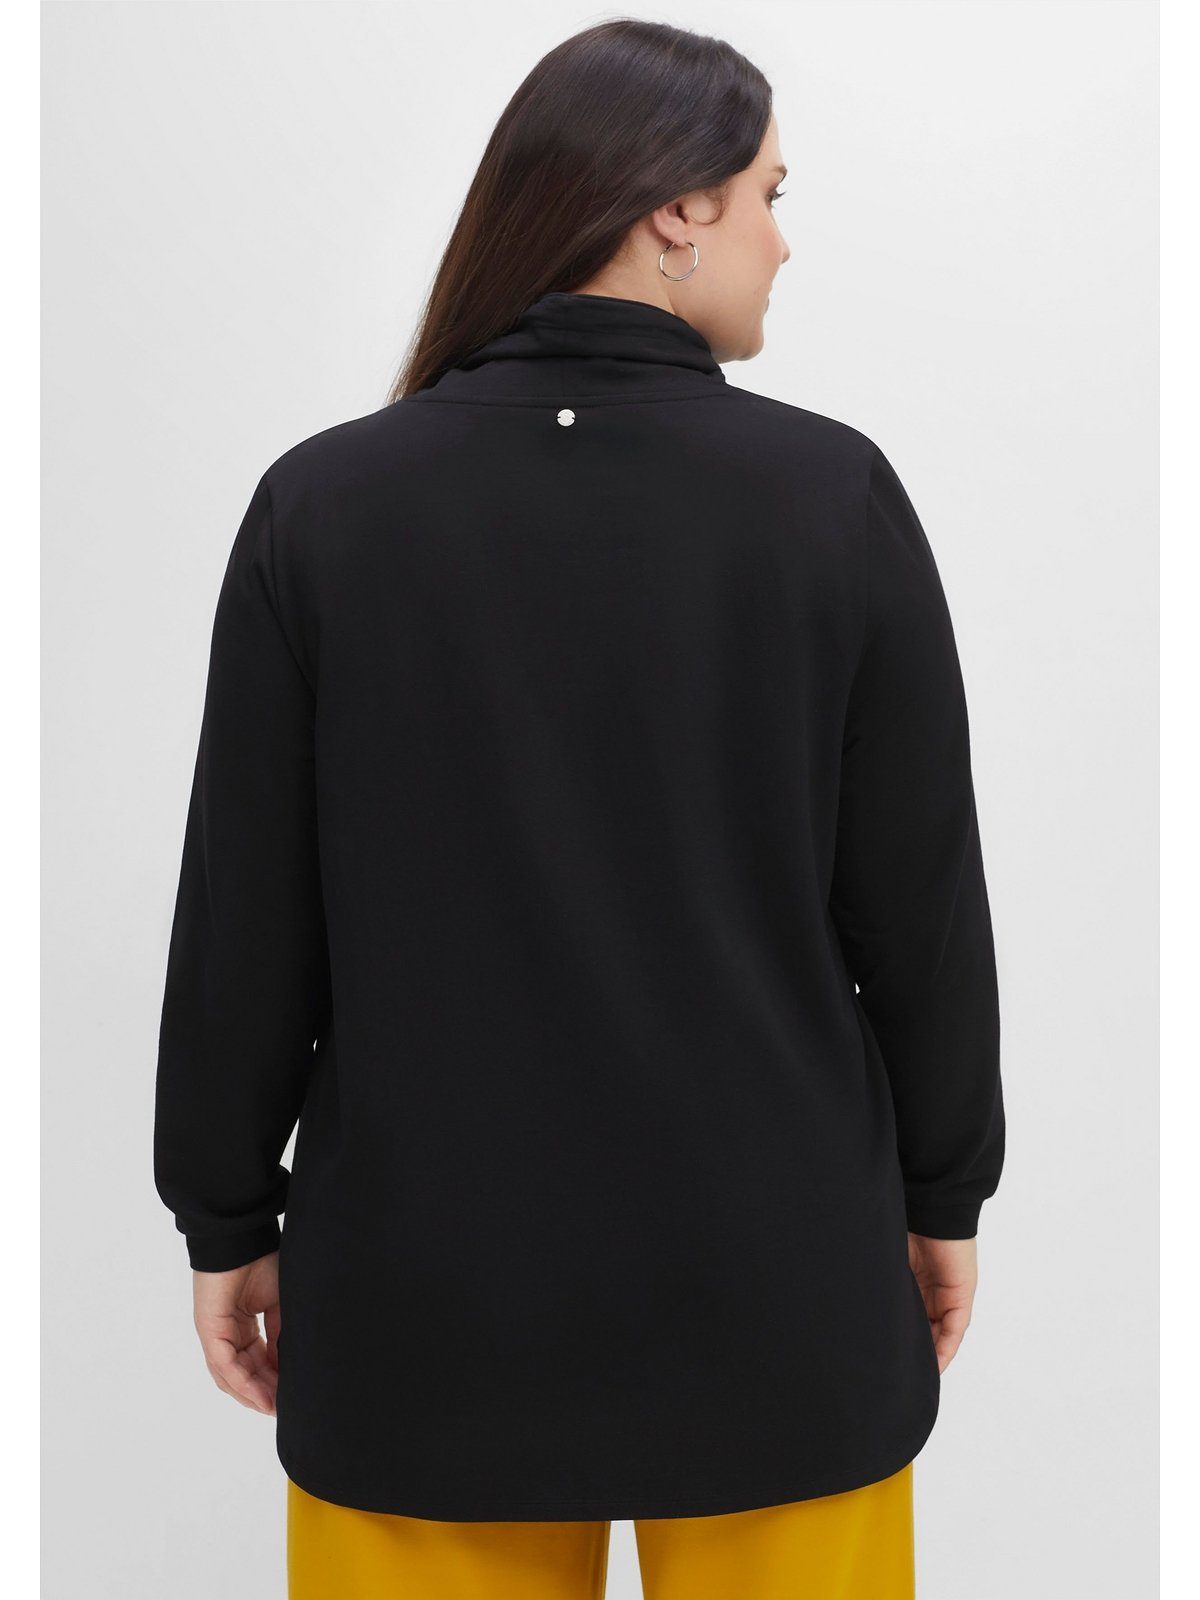 Sheego Sweatshirt Große mit Kragen Größen schwarz und hohem Tunnelzug